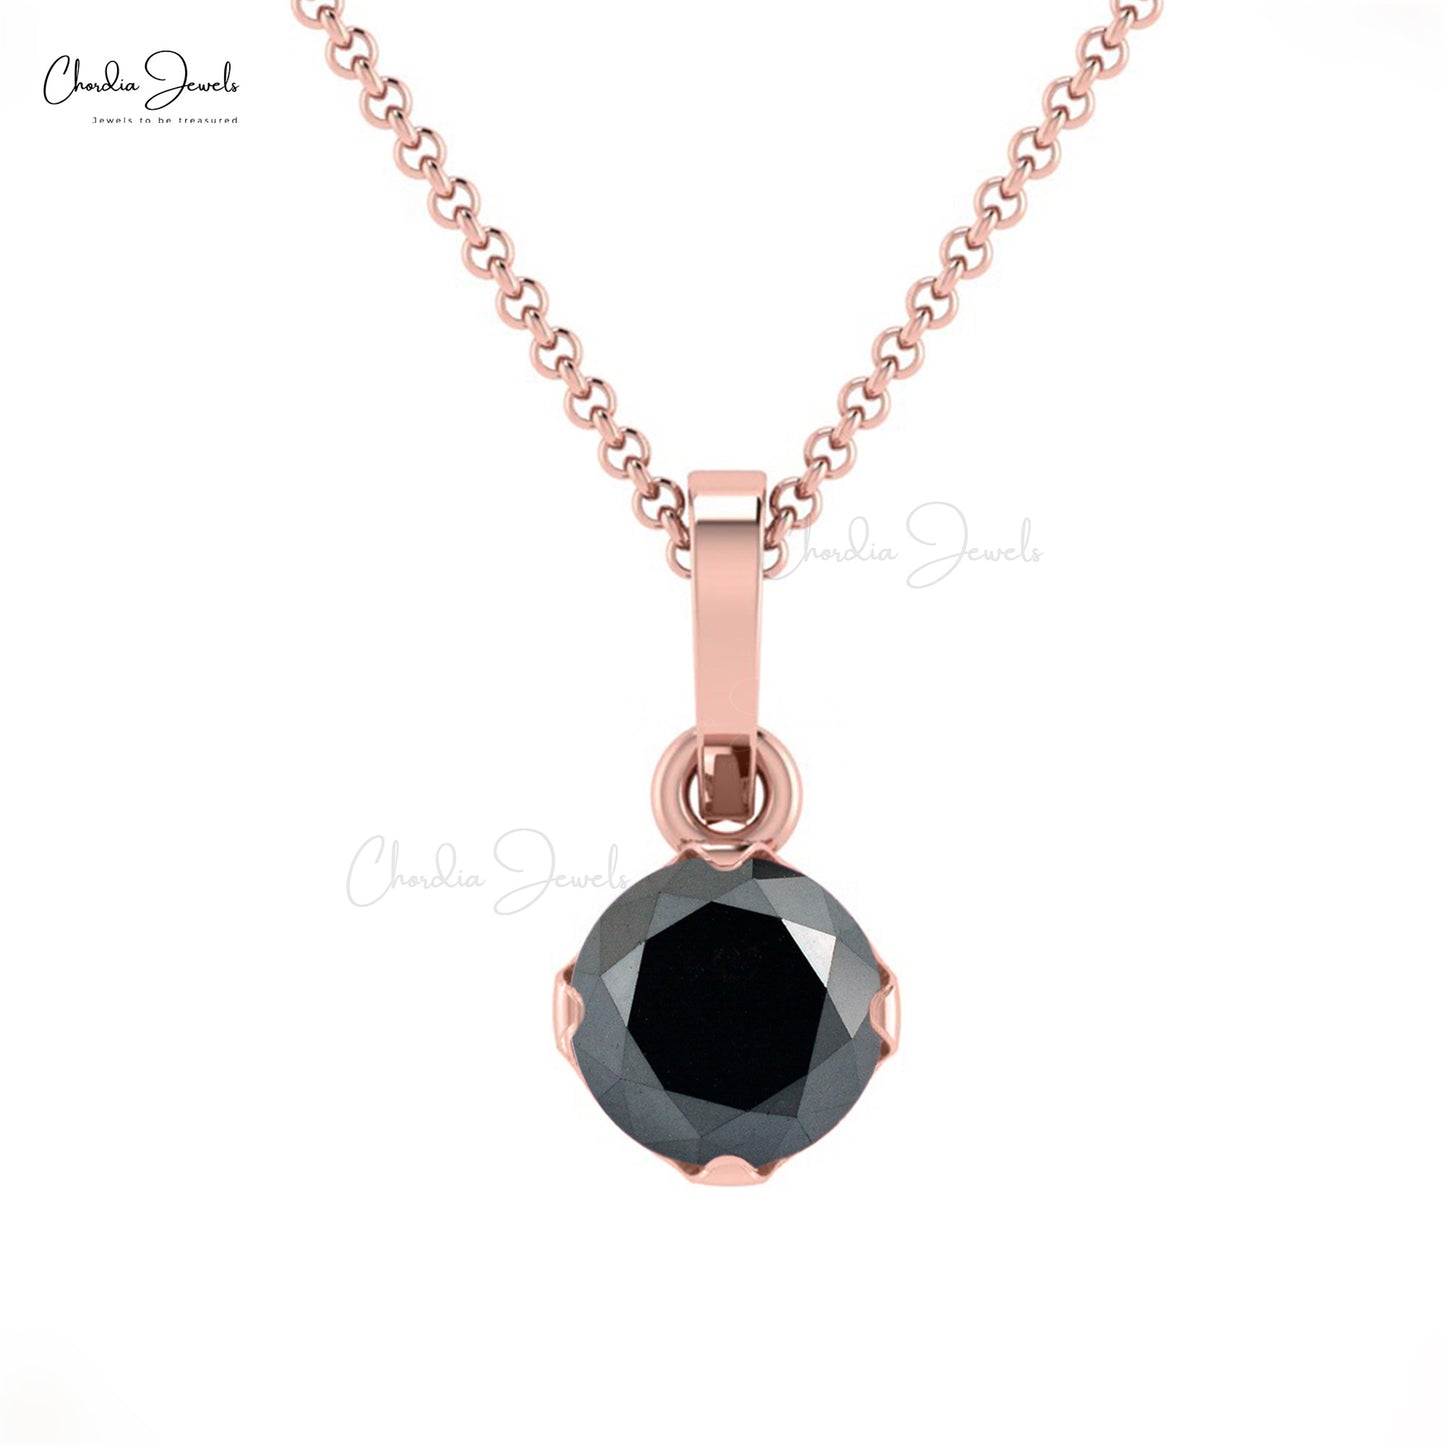 The Elegant Solitaire Pendant - Solitaire Diamond Pendant at Best Prices in  India | SarvadaJewels.com